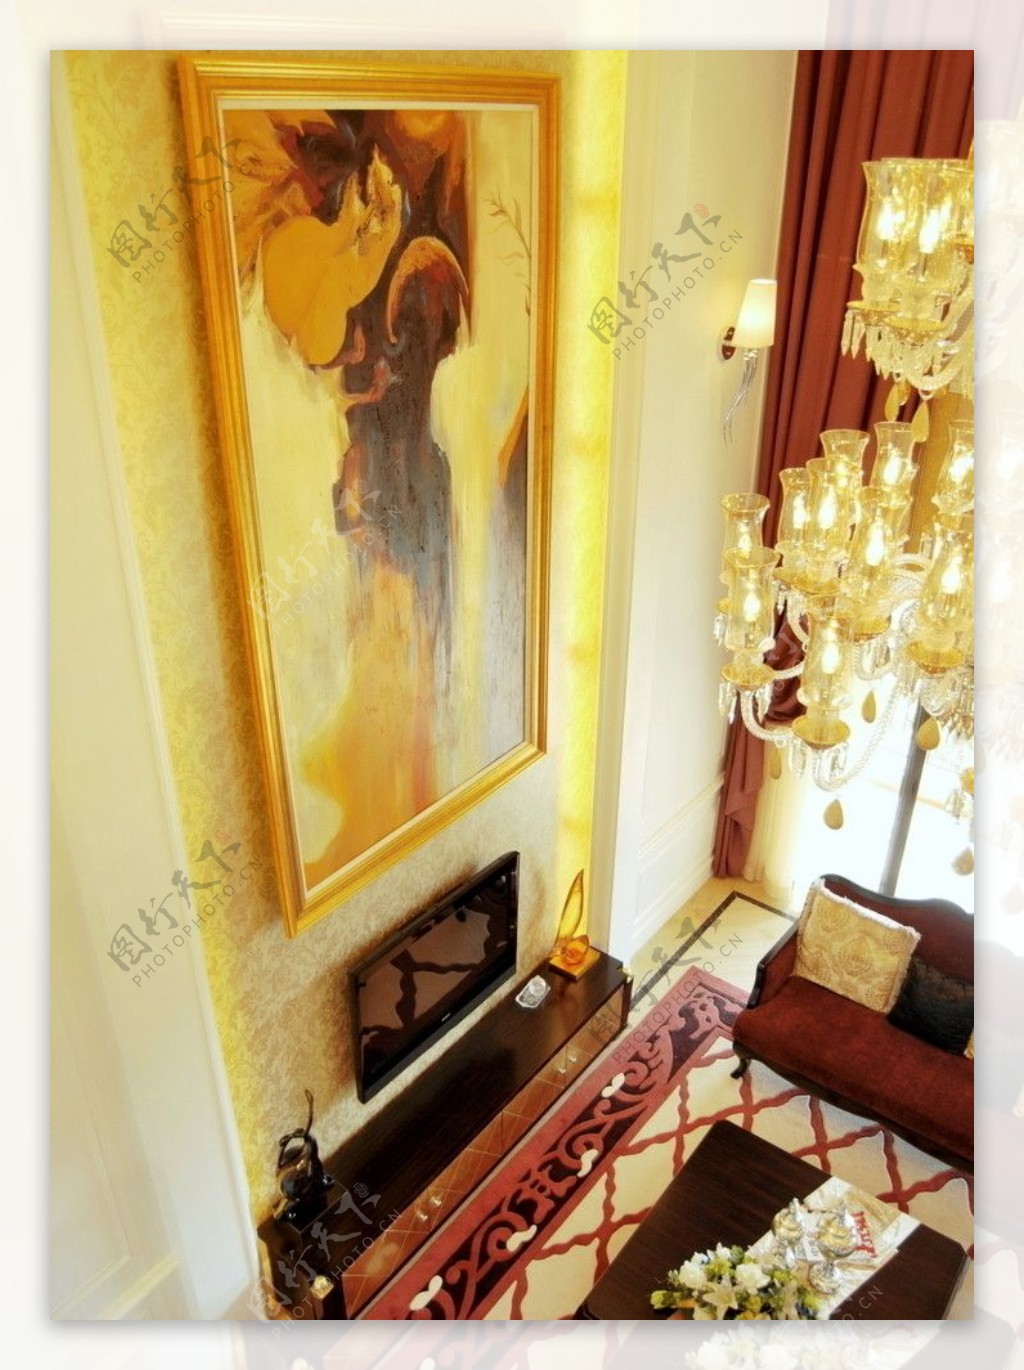 欧美古典装修风格客厅图片